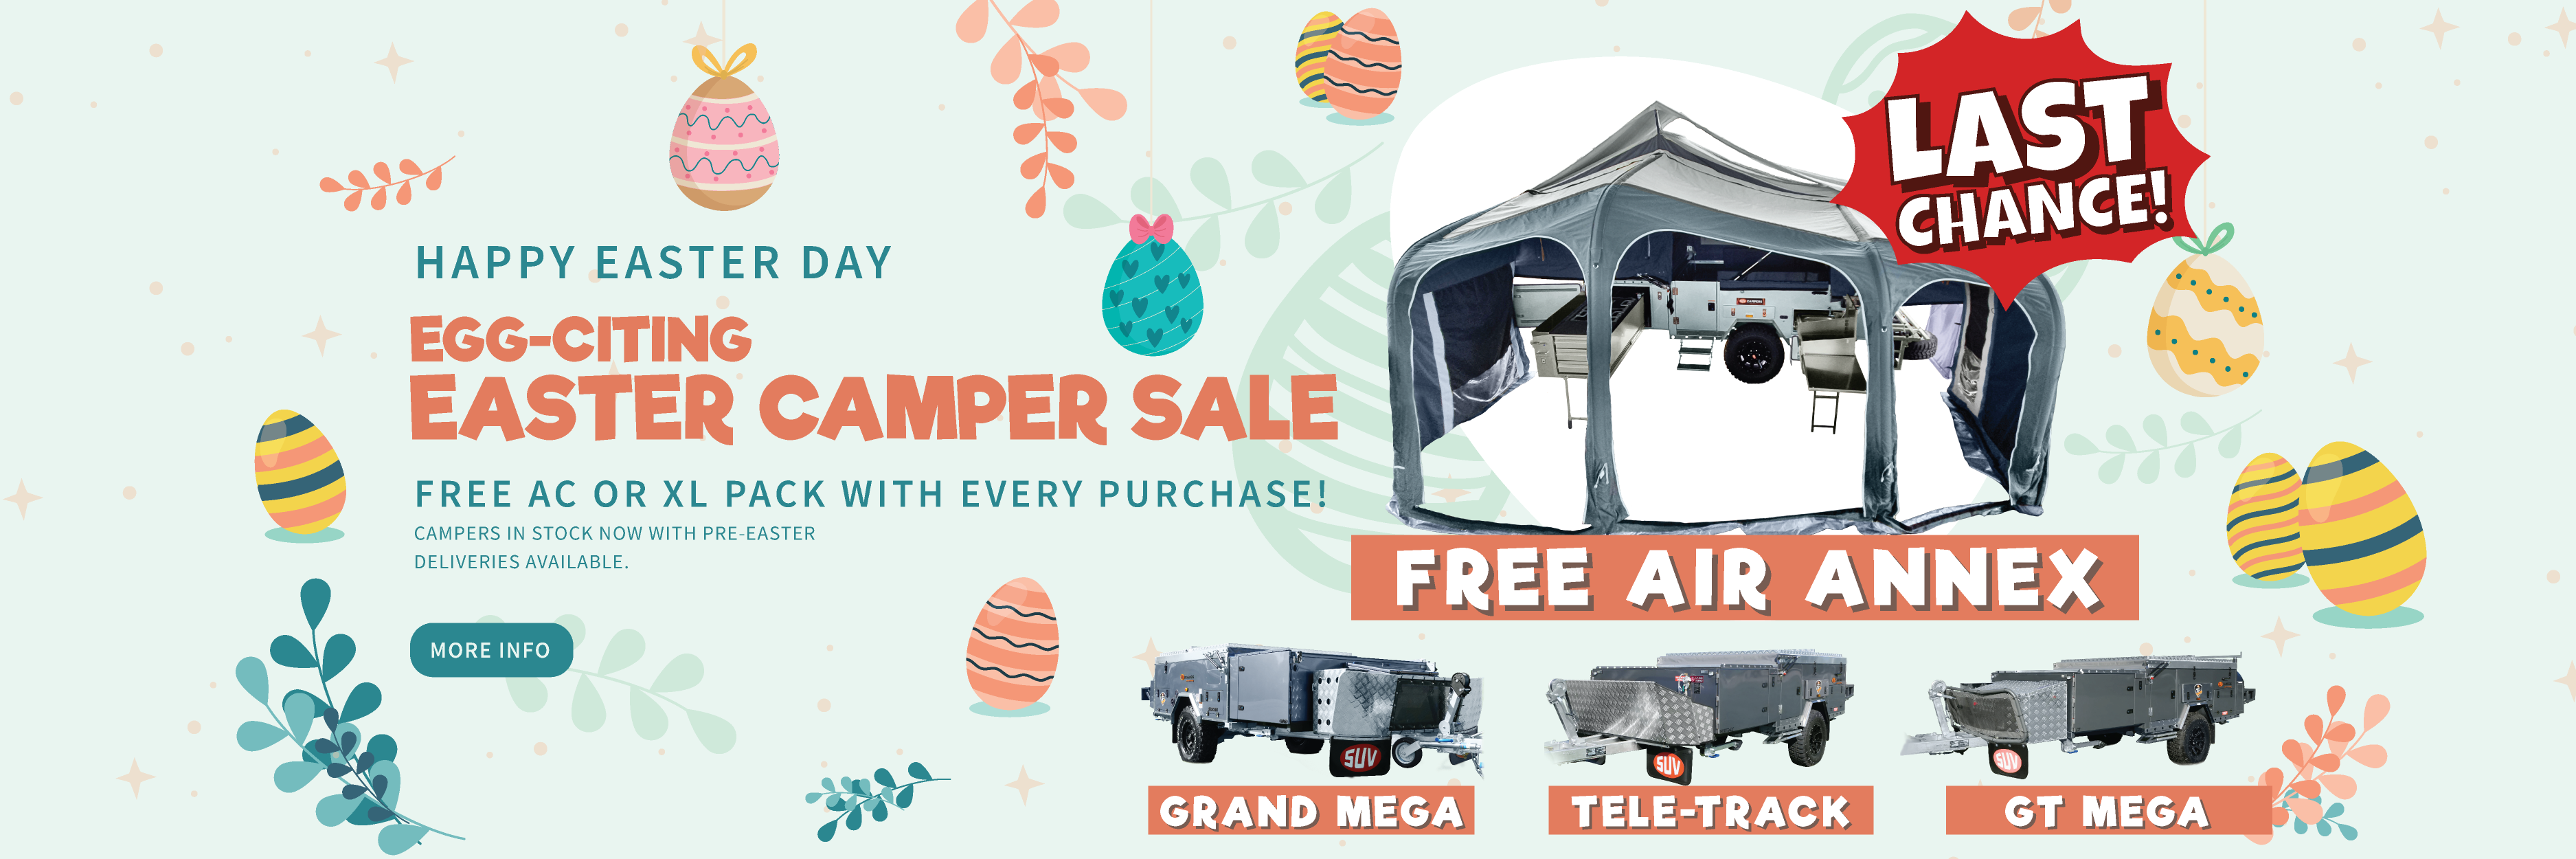 easter-camper-sale